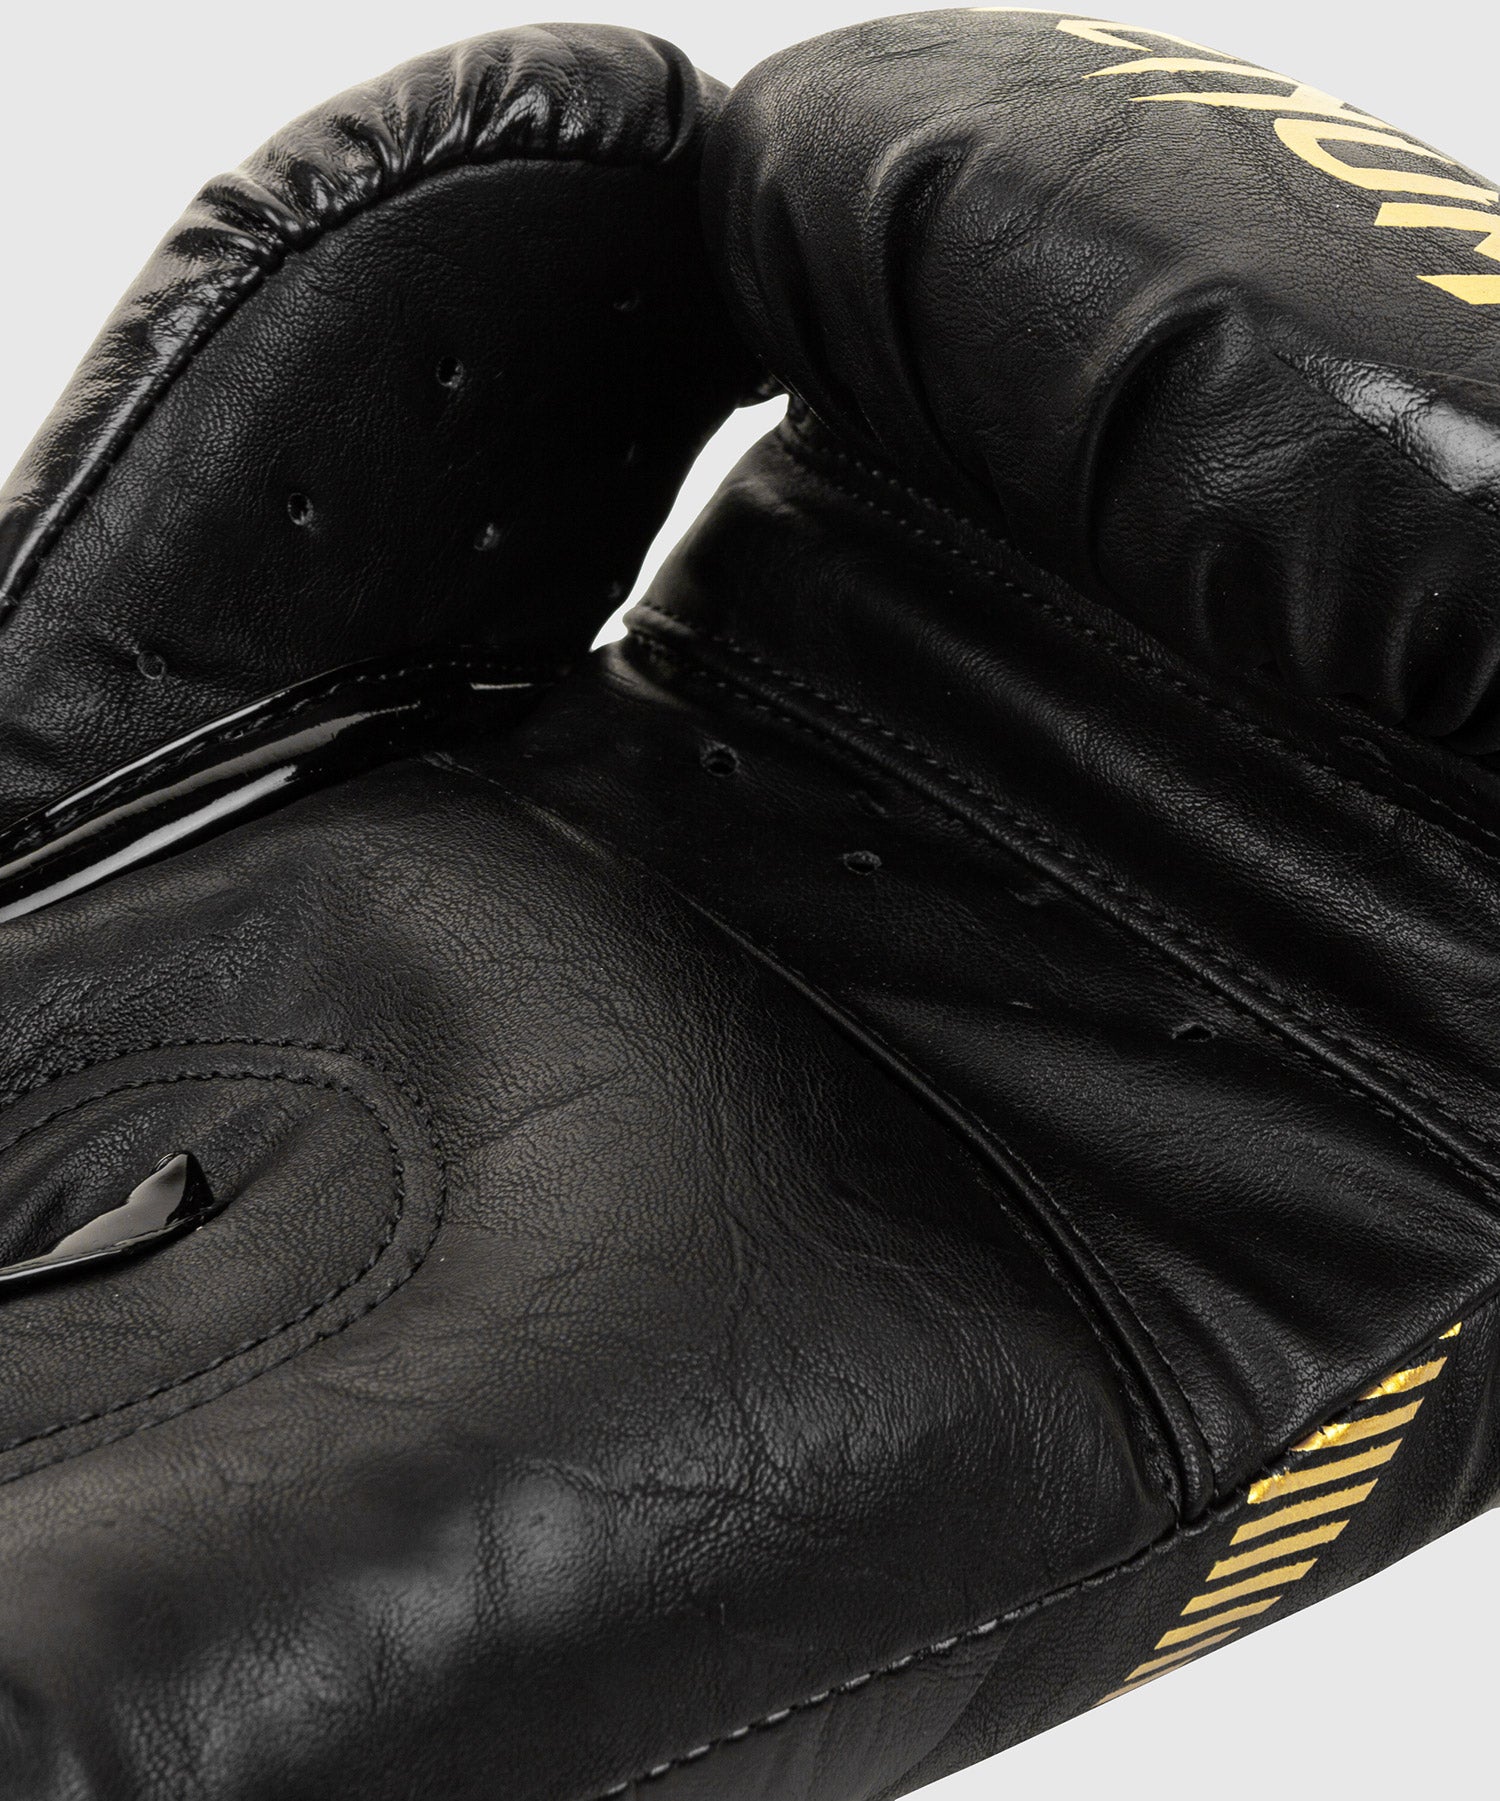 Venum Impact Boxing Gloves - Gold/Black - Venum